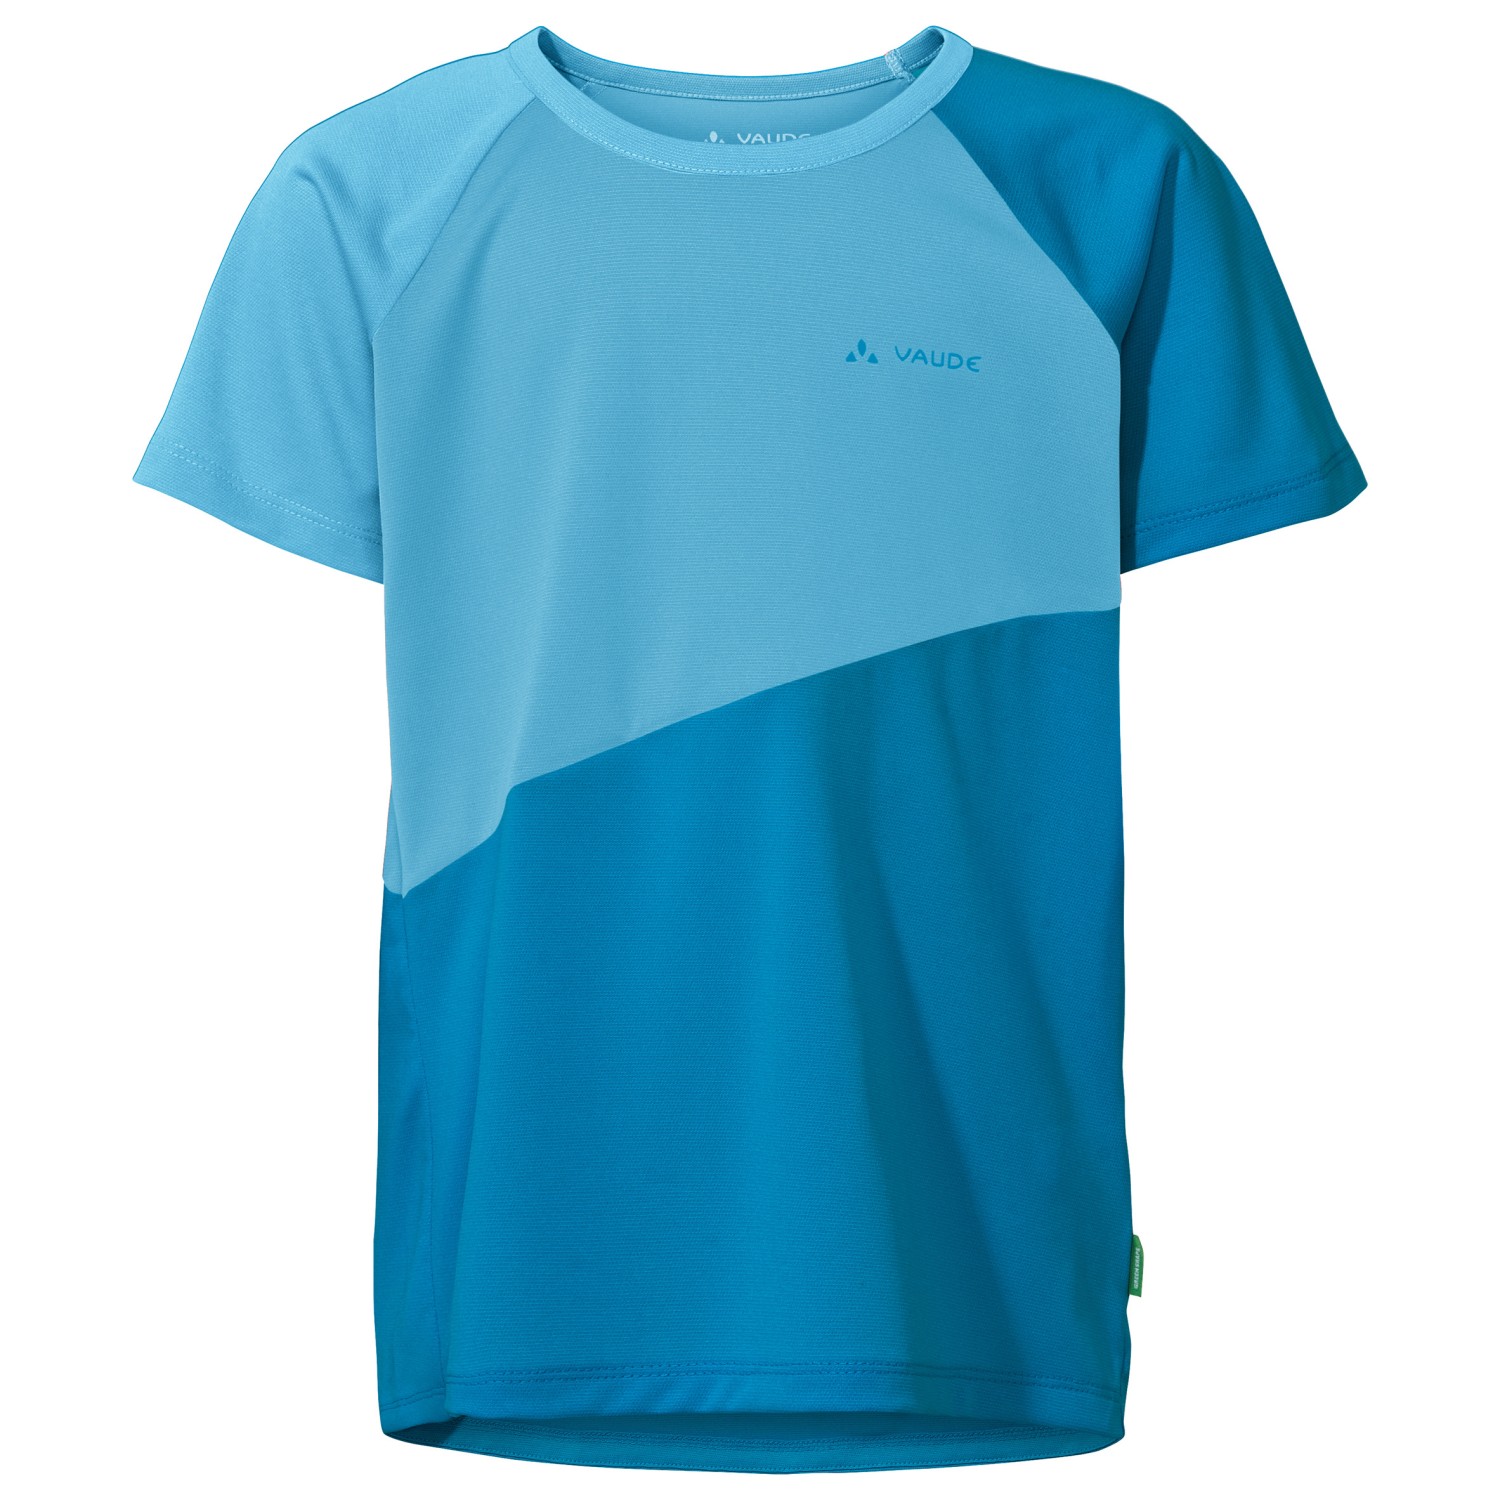 Функциональная рубашка Vaude Kid's Moab T Shirt II, цвет Icicle велосипедный трикотаж vaude moab l s t shirt vi цвет nordic blue